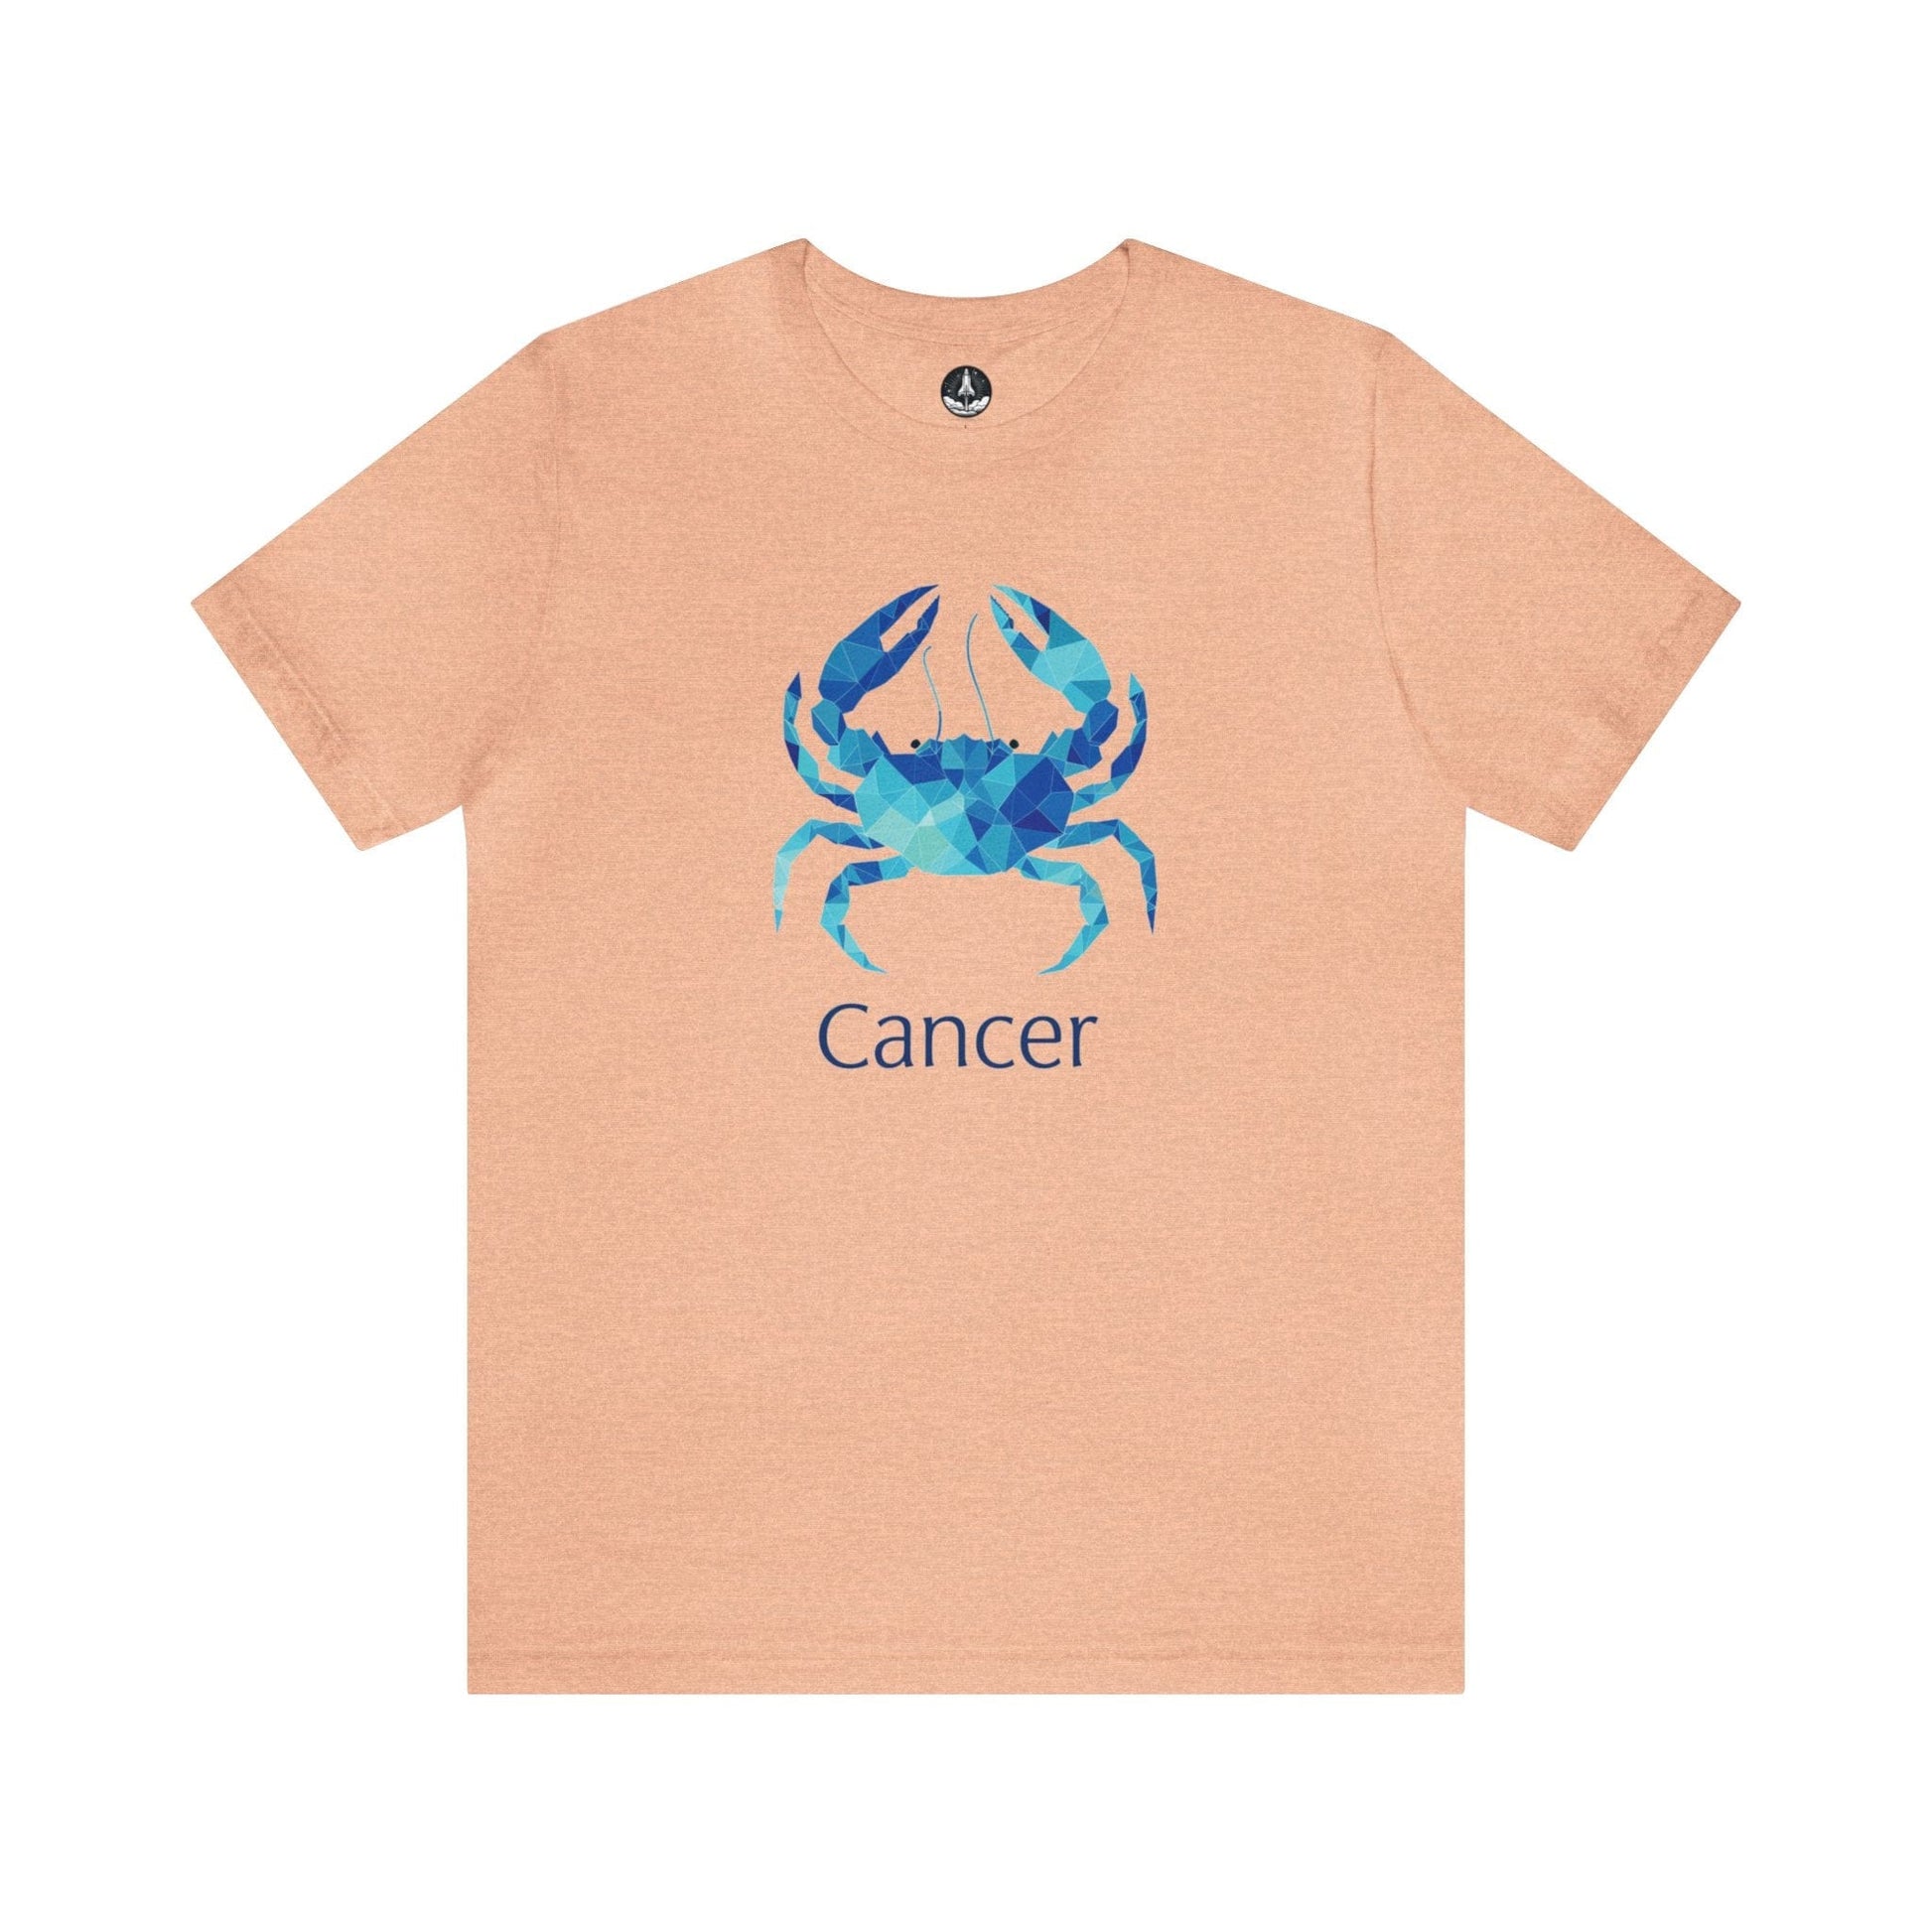 T-Shirt Heather Peach / S Cancer Geometric Constellation T-Shirt: Modern Astrology Meets Art